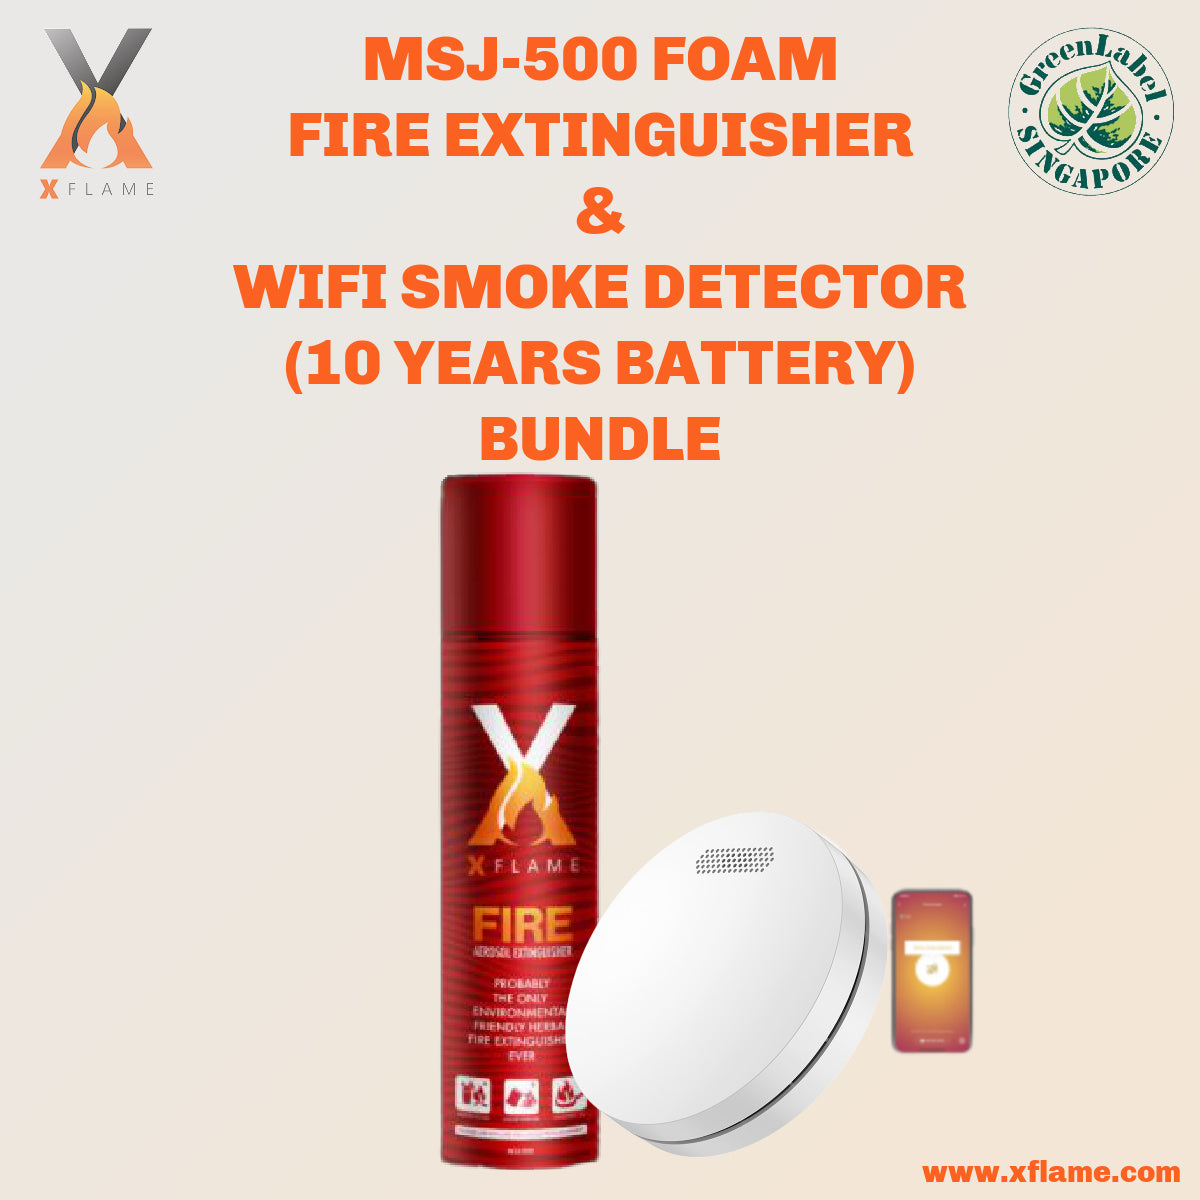 XFLAME MSJ-500 Fire Extinguisher with WIFI Smart Smoke Alarm